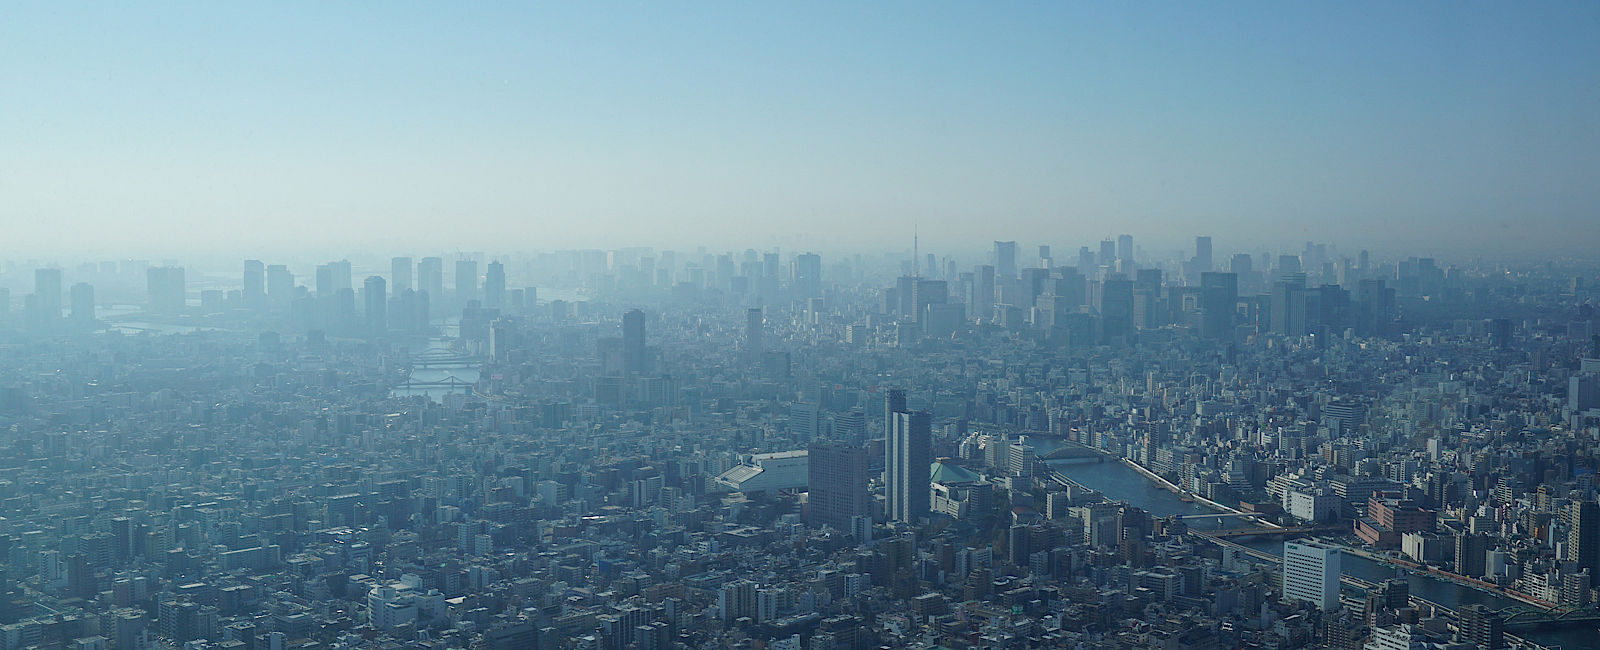 TOKIO
 Reise nach Tokio - Finanz- und Kulturzentrum Japans 